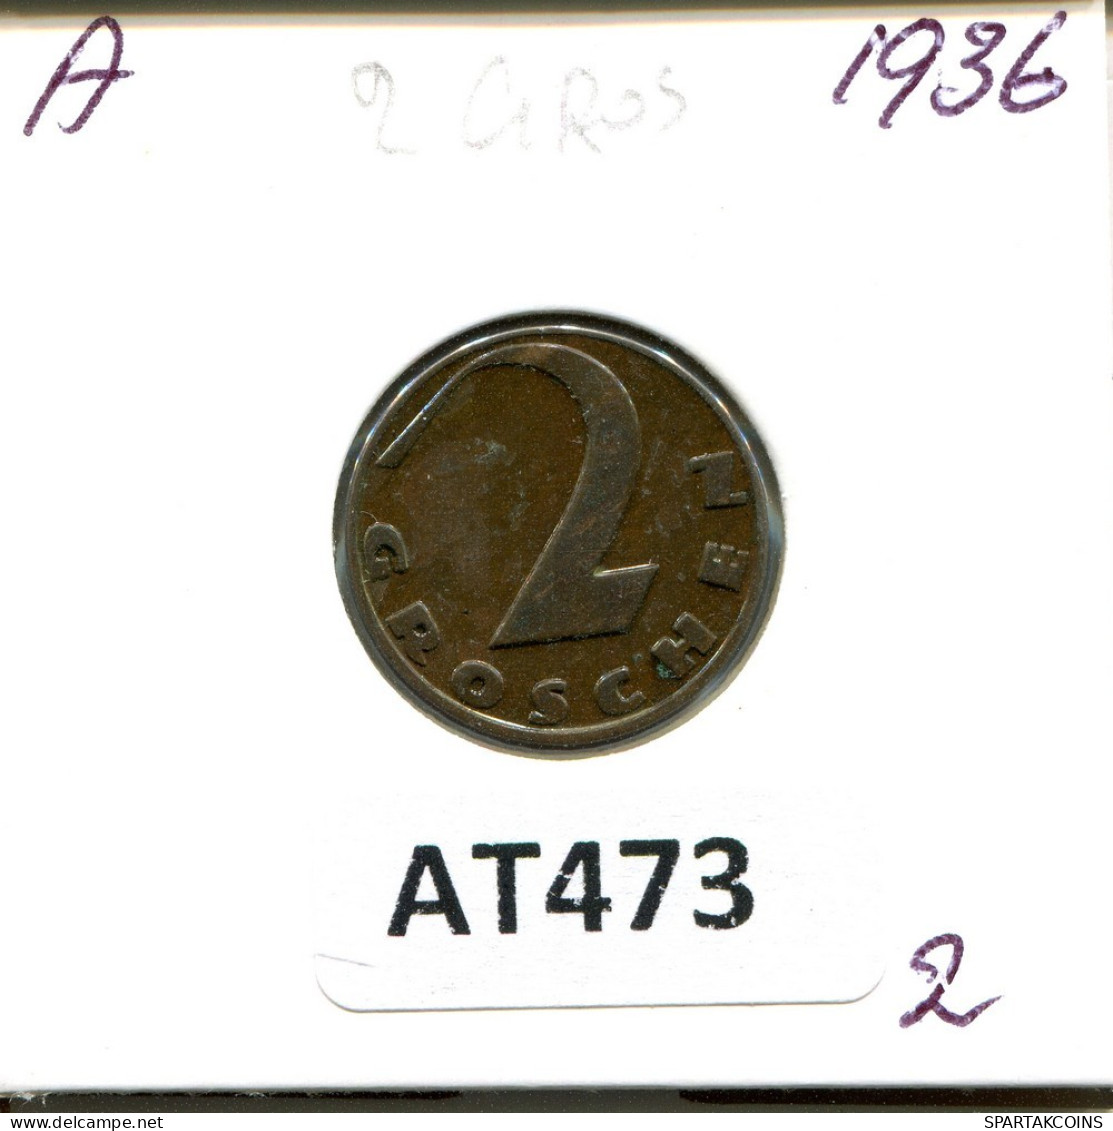 2 GROSCHEN 1936 AUSTRIA Coin #AT473.U.A - Oostenrijk